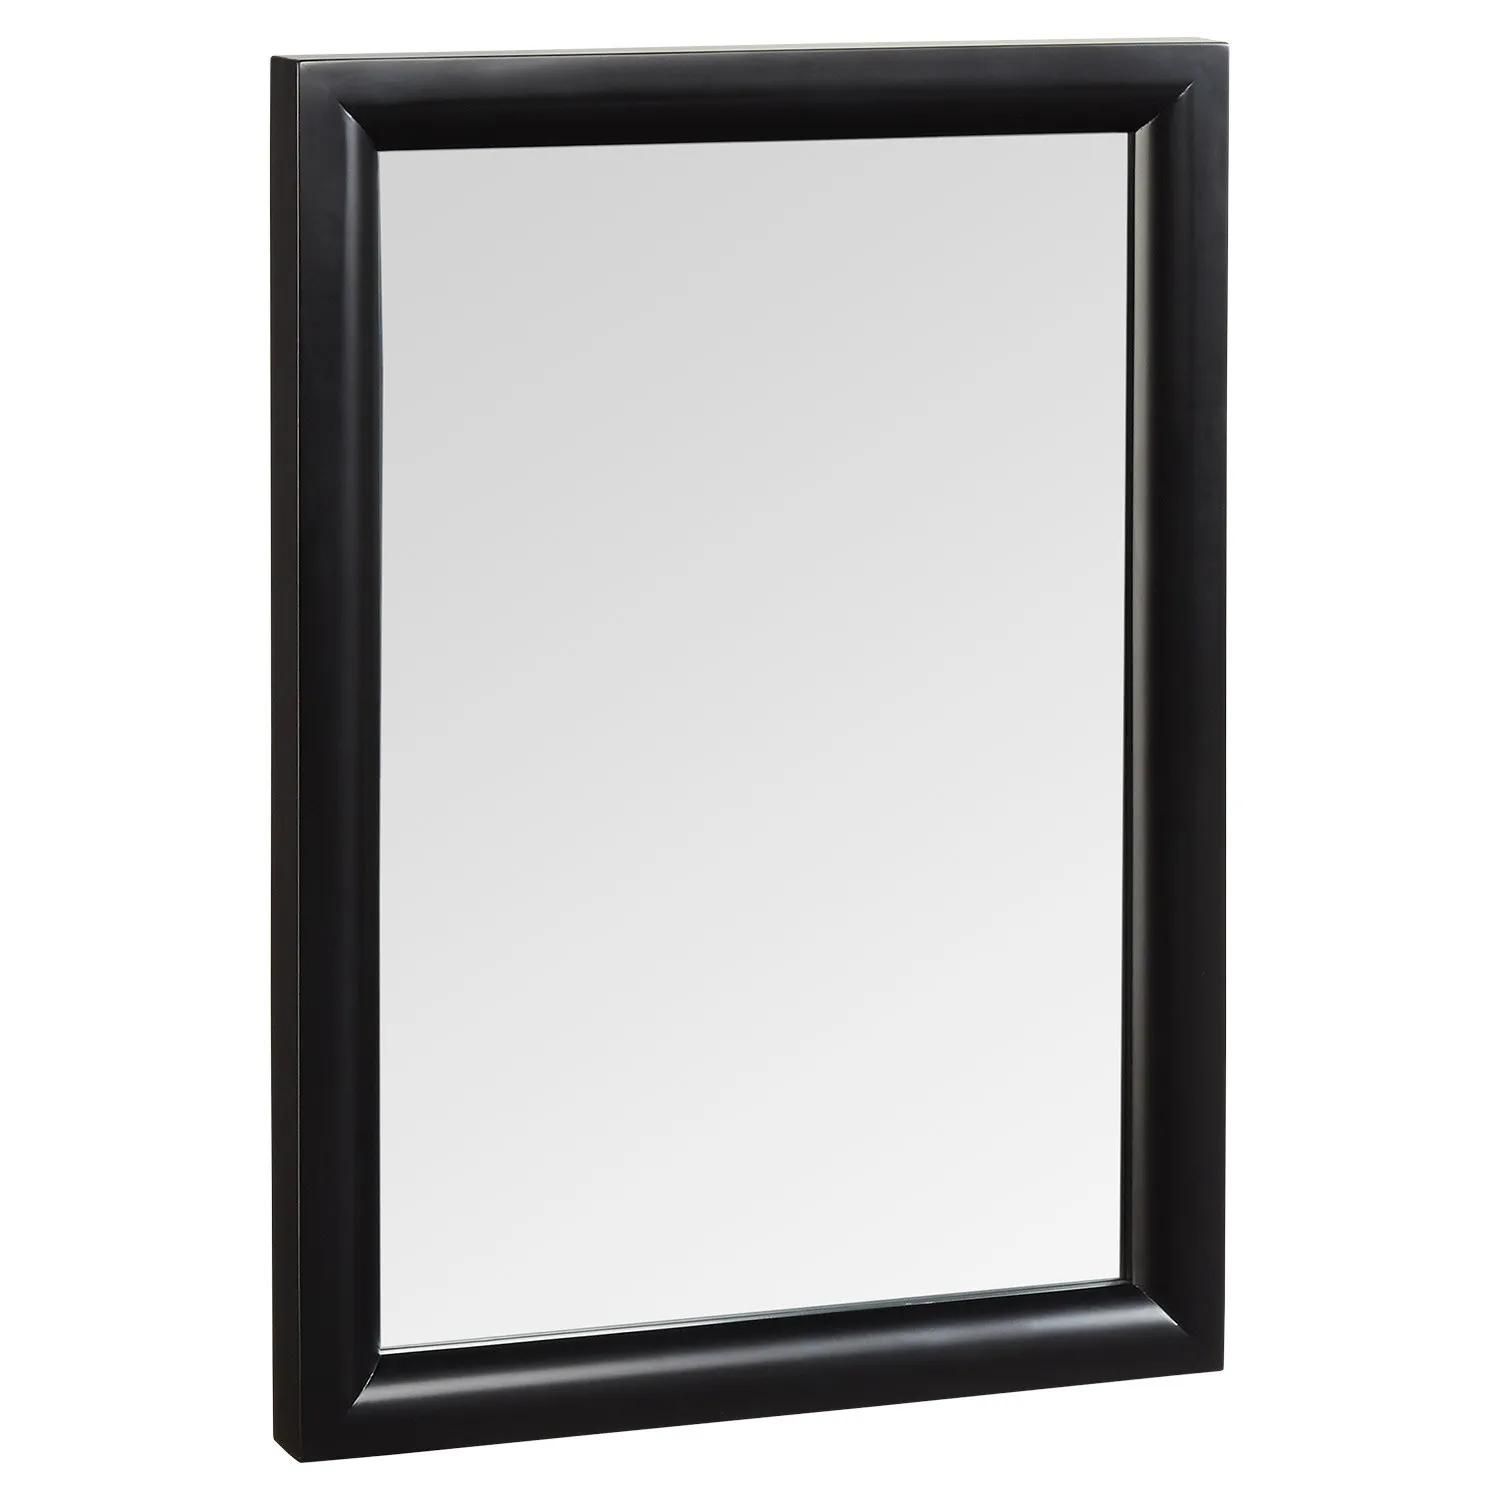 Talyn Mahogany Vanity Mirror – Black – Bathroom Mirrors – Bath Accents Within Mahogany Accent Wall Mirrors (View 5 of 15)